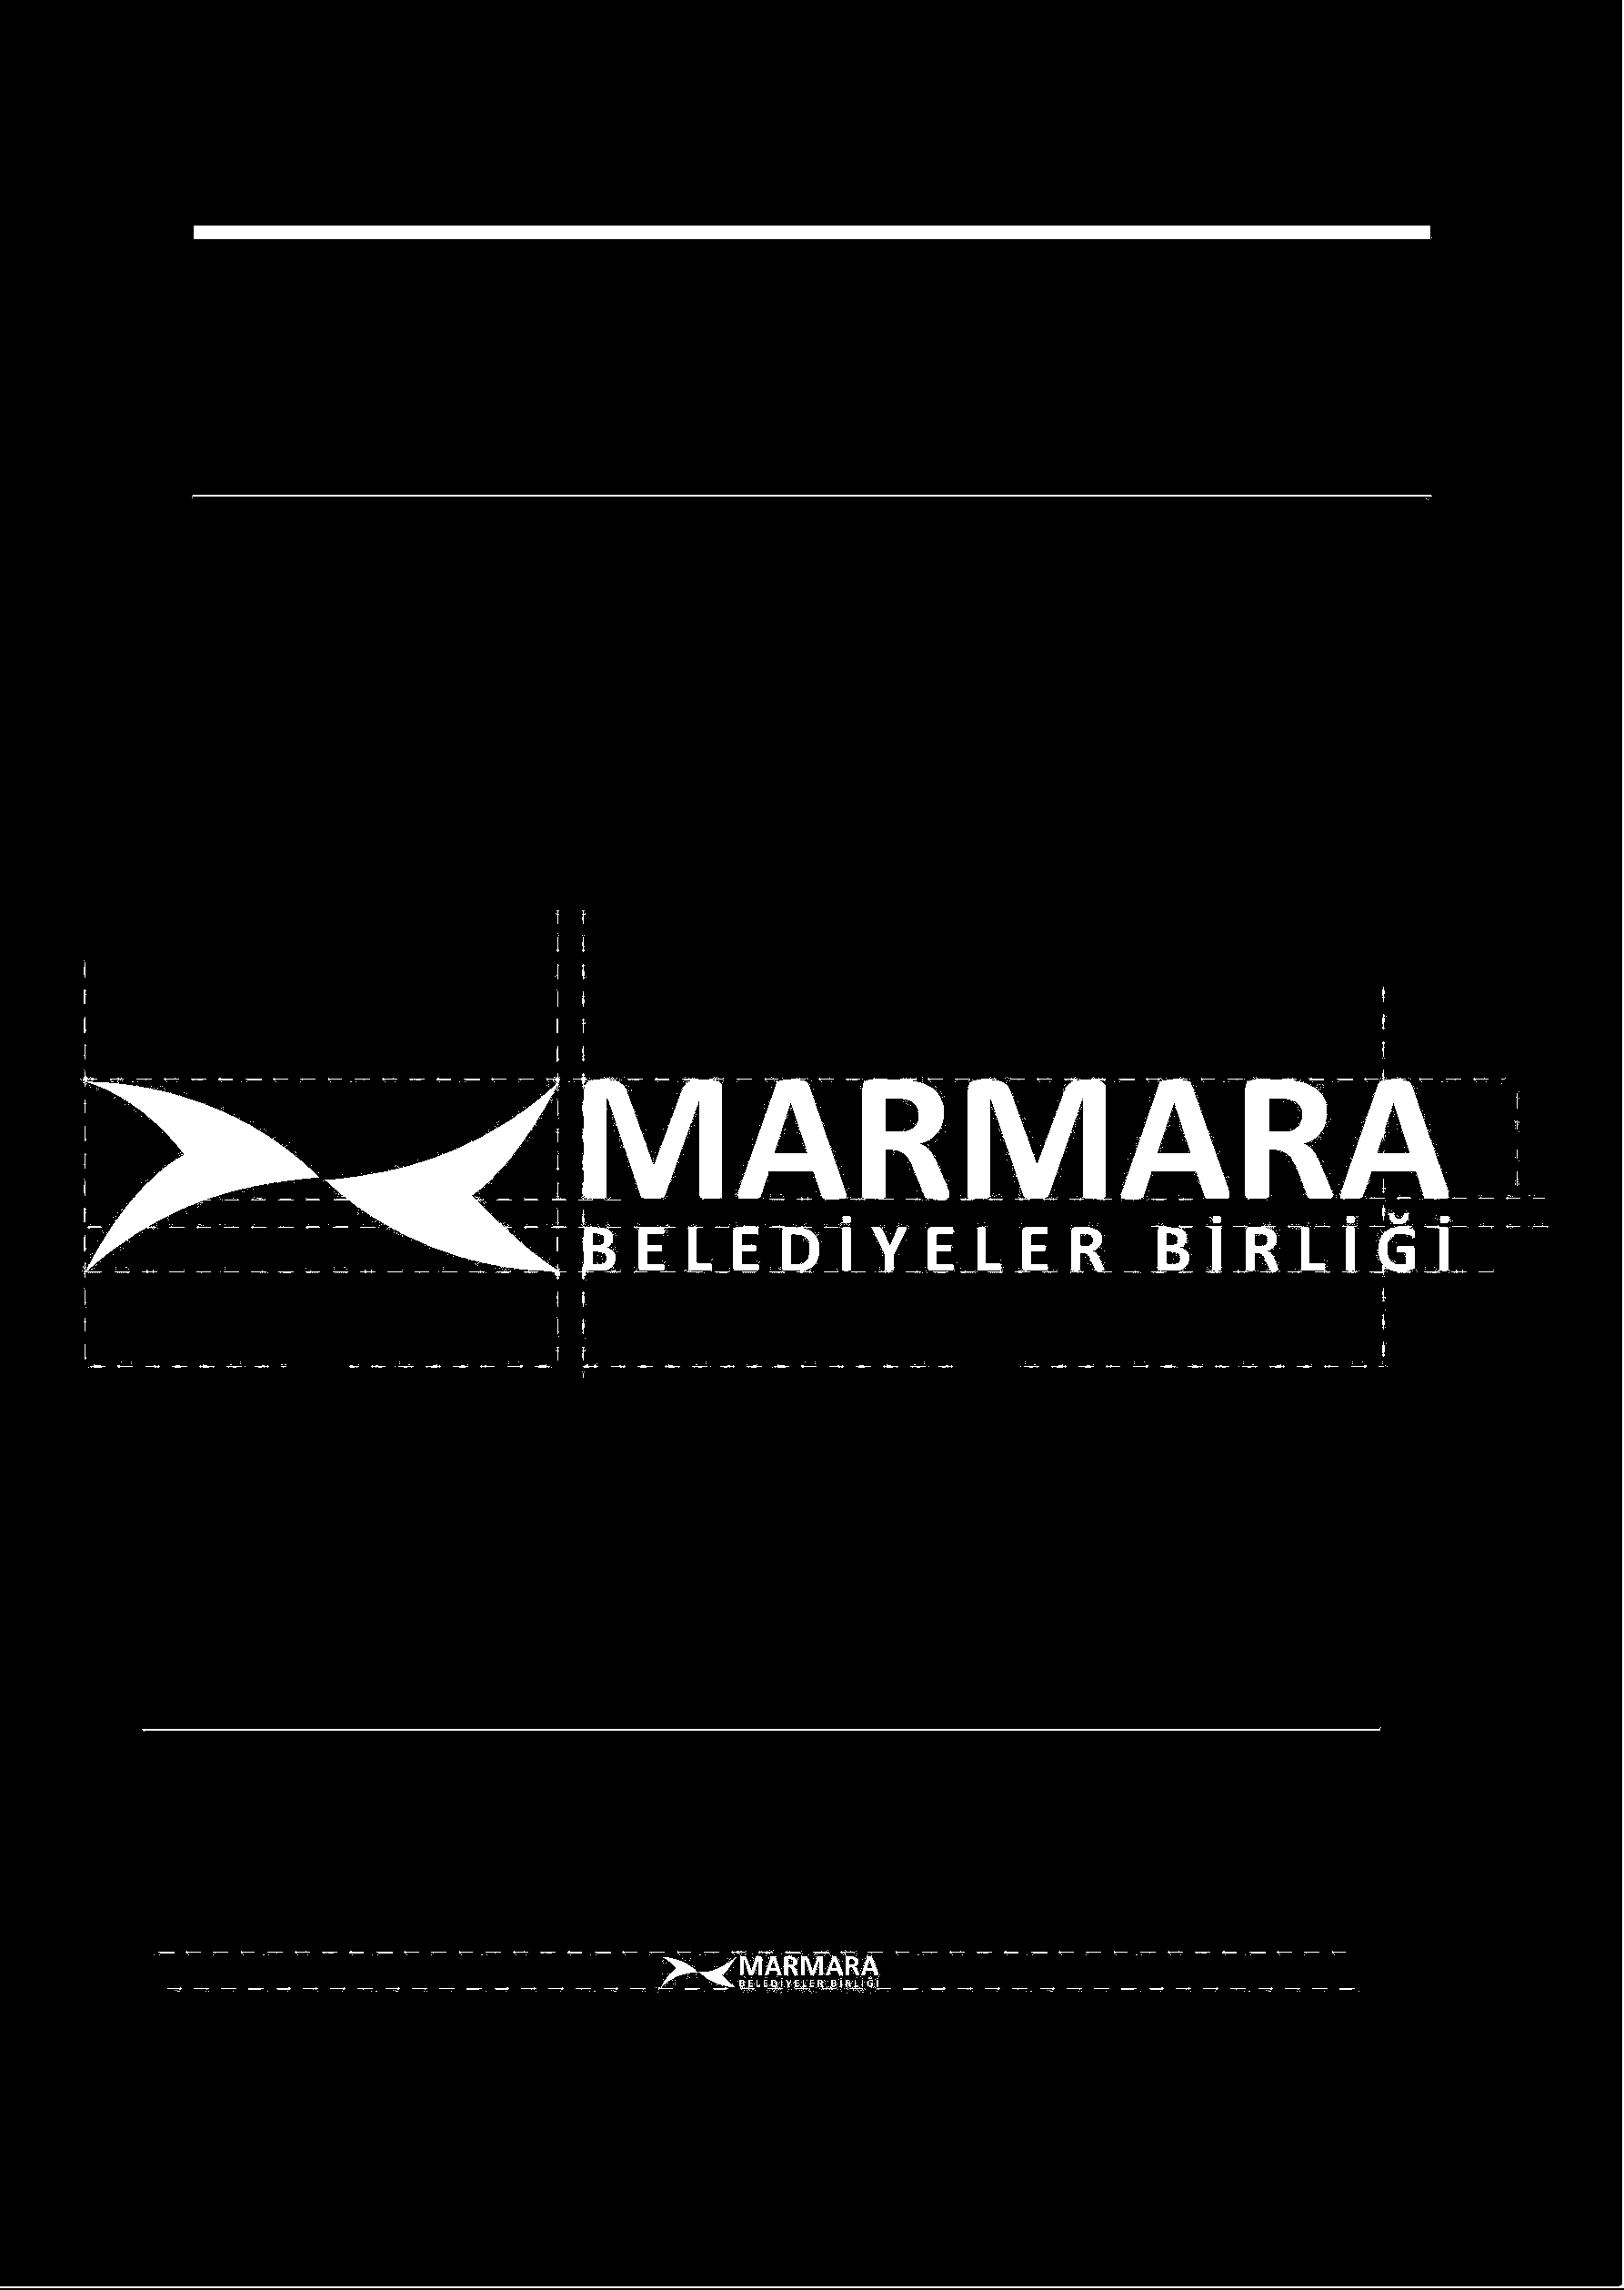 1.4 Logo Yatay Siyah Beyaz ve Minumum Ölçü Kullanım İlkeleri Marmara Belediyeler Birliği logosu ekteki Cd de elektronik ortamdaki hali ile kullanılmalıdır.